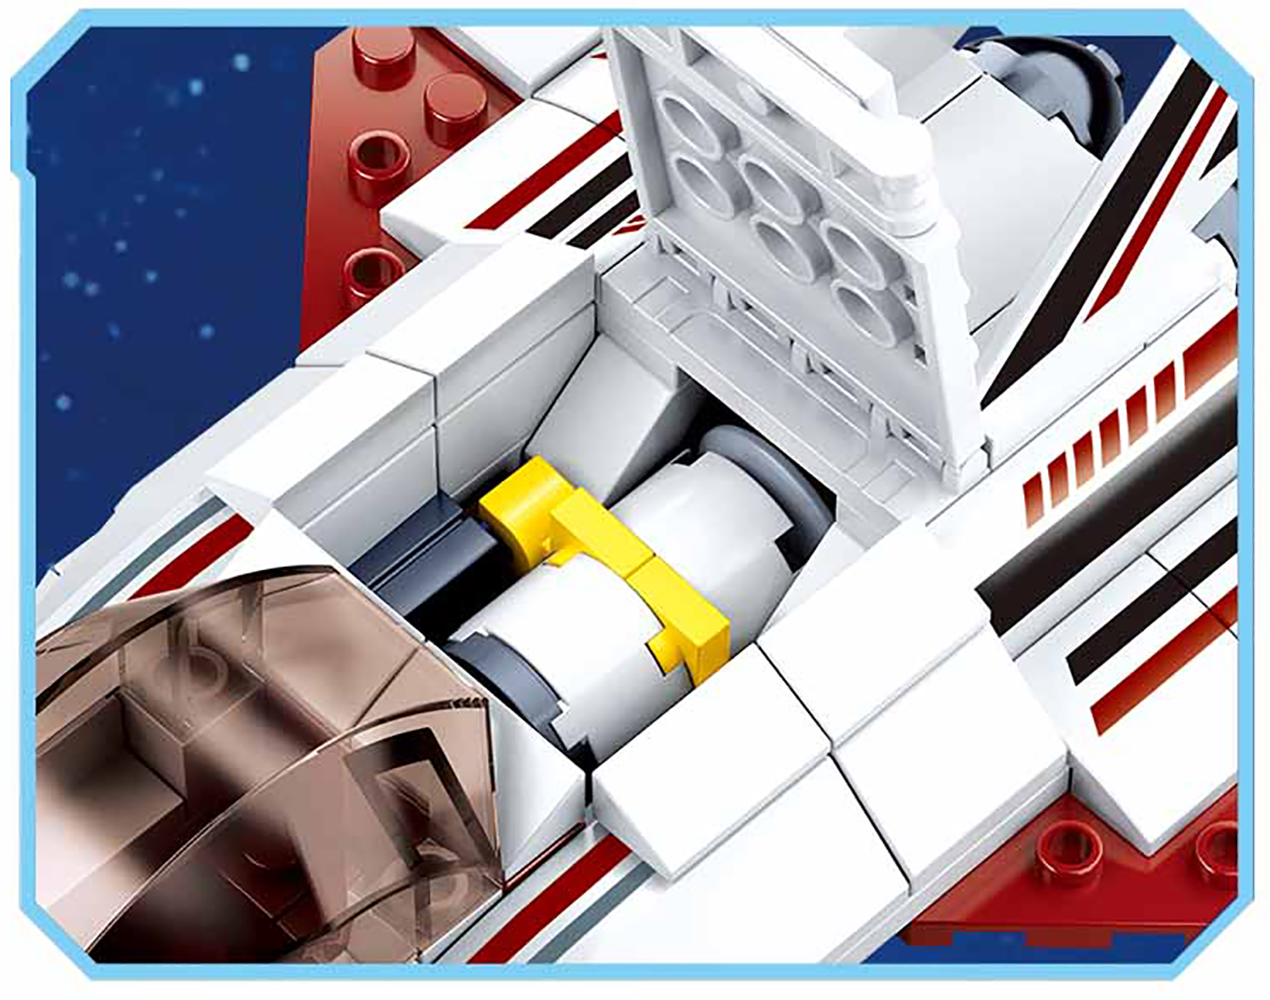 Space Shuttle Planet Hopper Building Brick Kit (115 pcs)